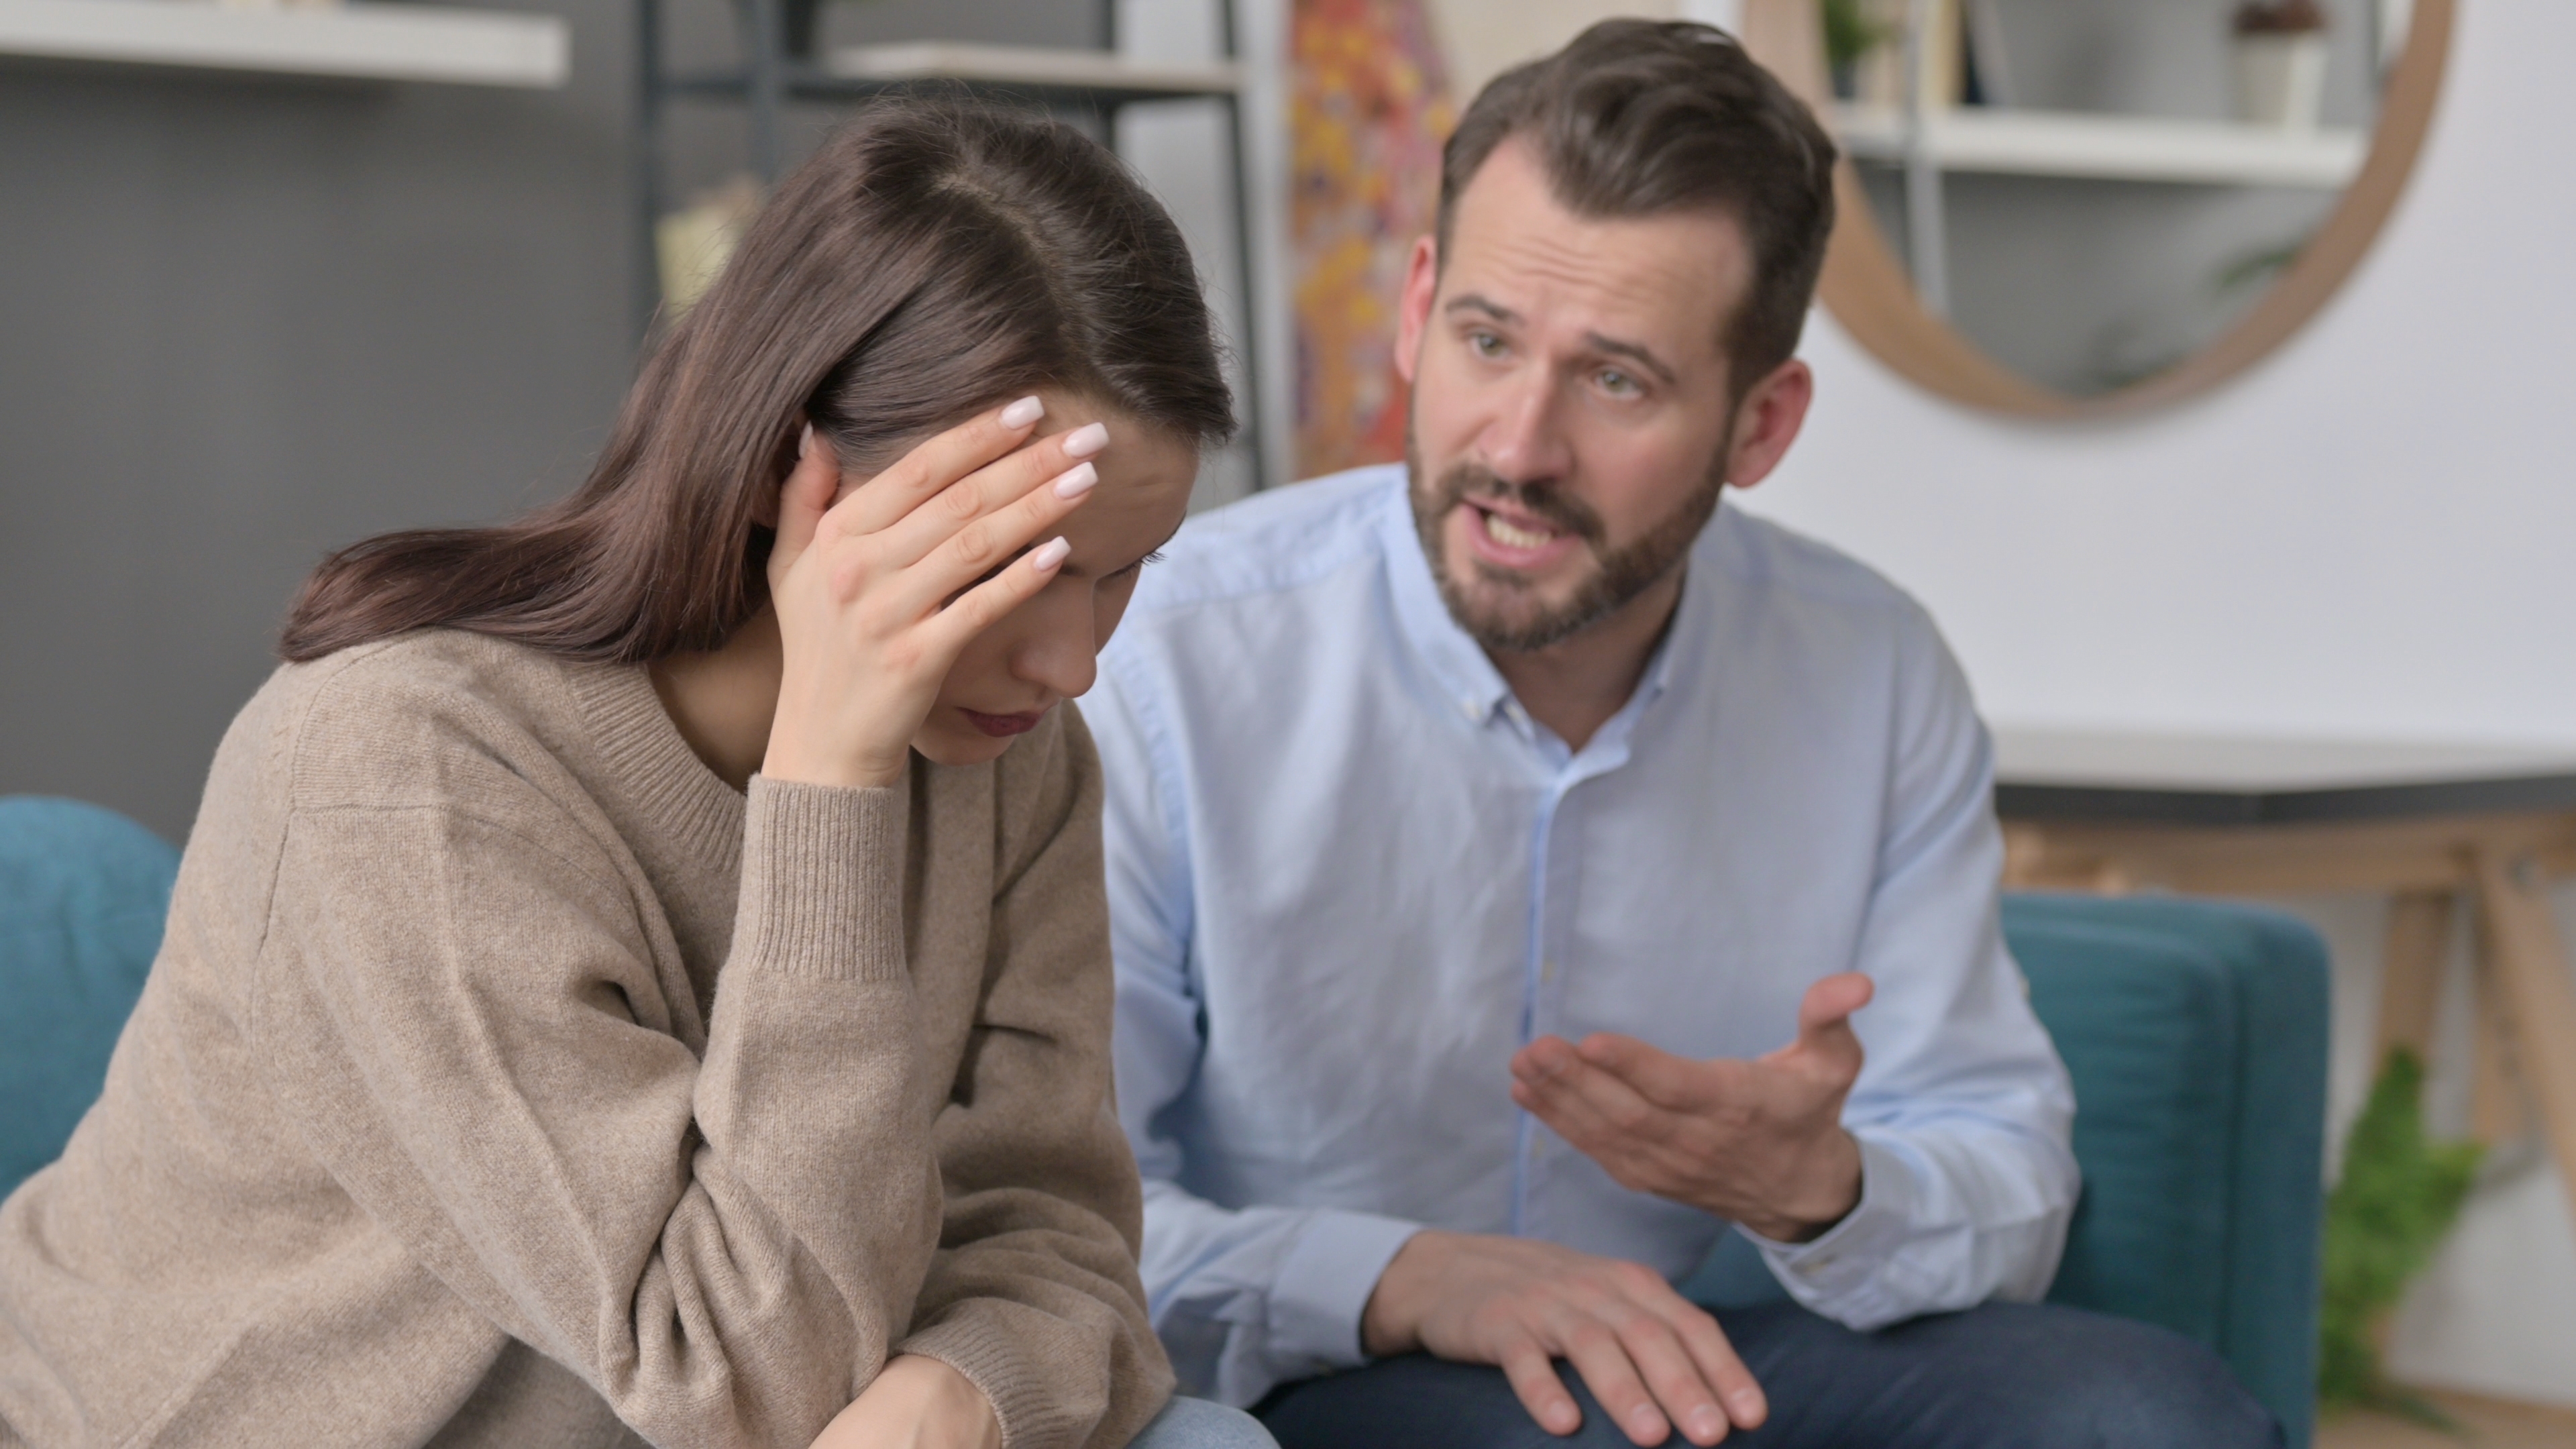 Frau fühlt sich während eines Streits mit ihrem Mann gestresst | Quelle: Shutterstock